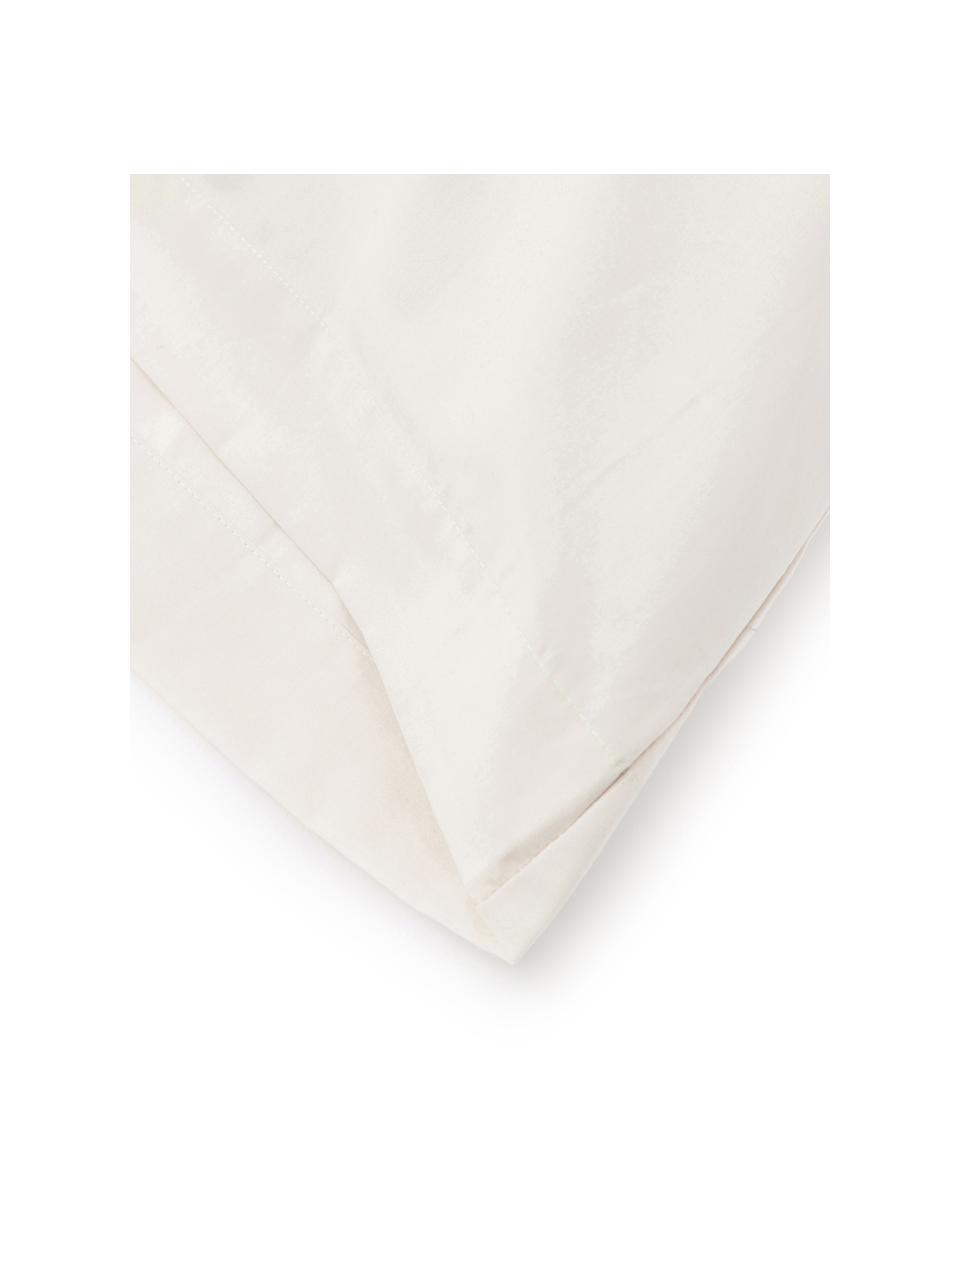 Funda de almohada Plain Dye, 50 x 110 cm, 100% algodón
El algodón da una sensación agradable y suave en la piel, absorbe bien la humedad y es adecuado para personas alérgicas, Crema, An 50 x L 110 cm